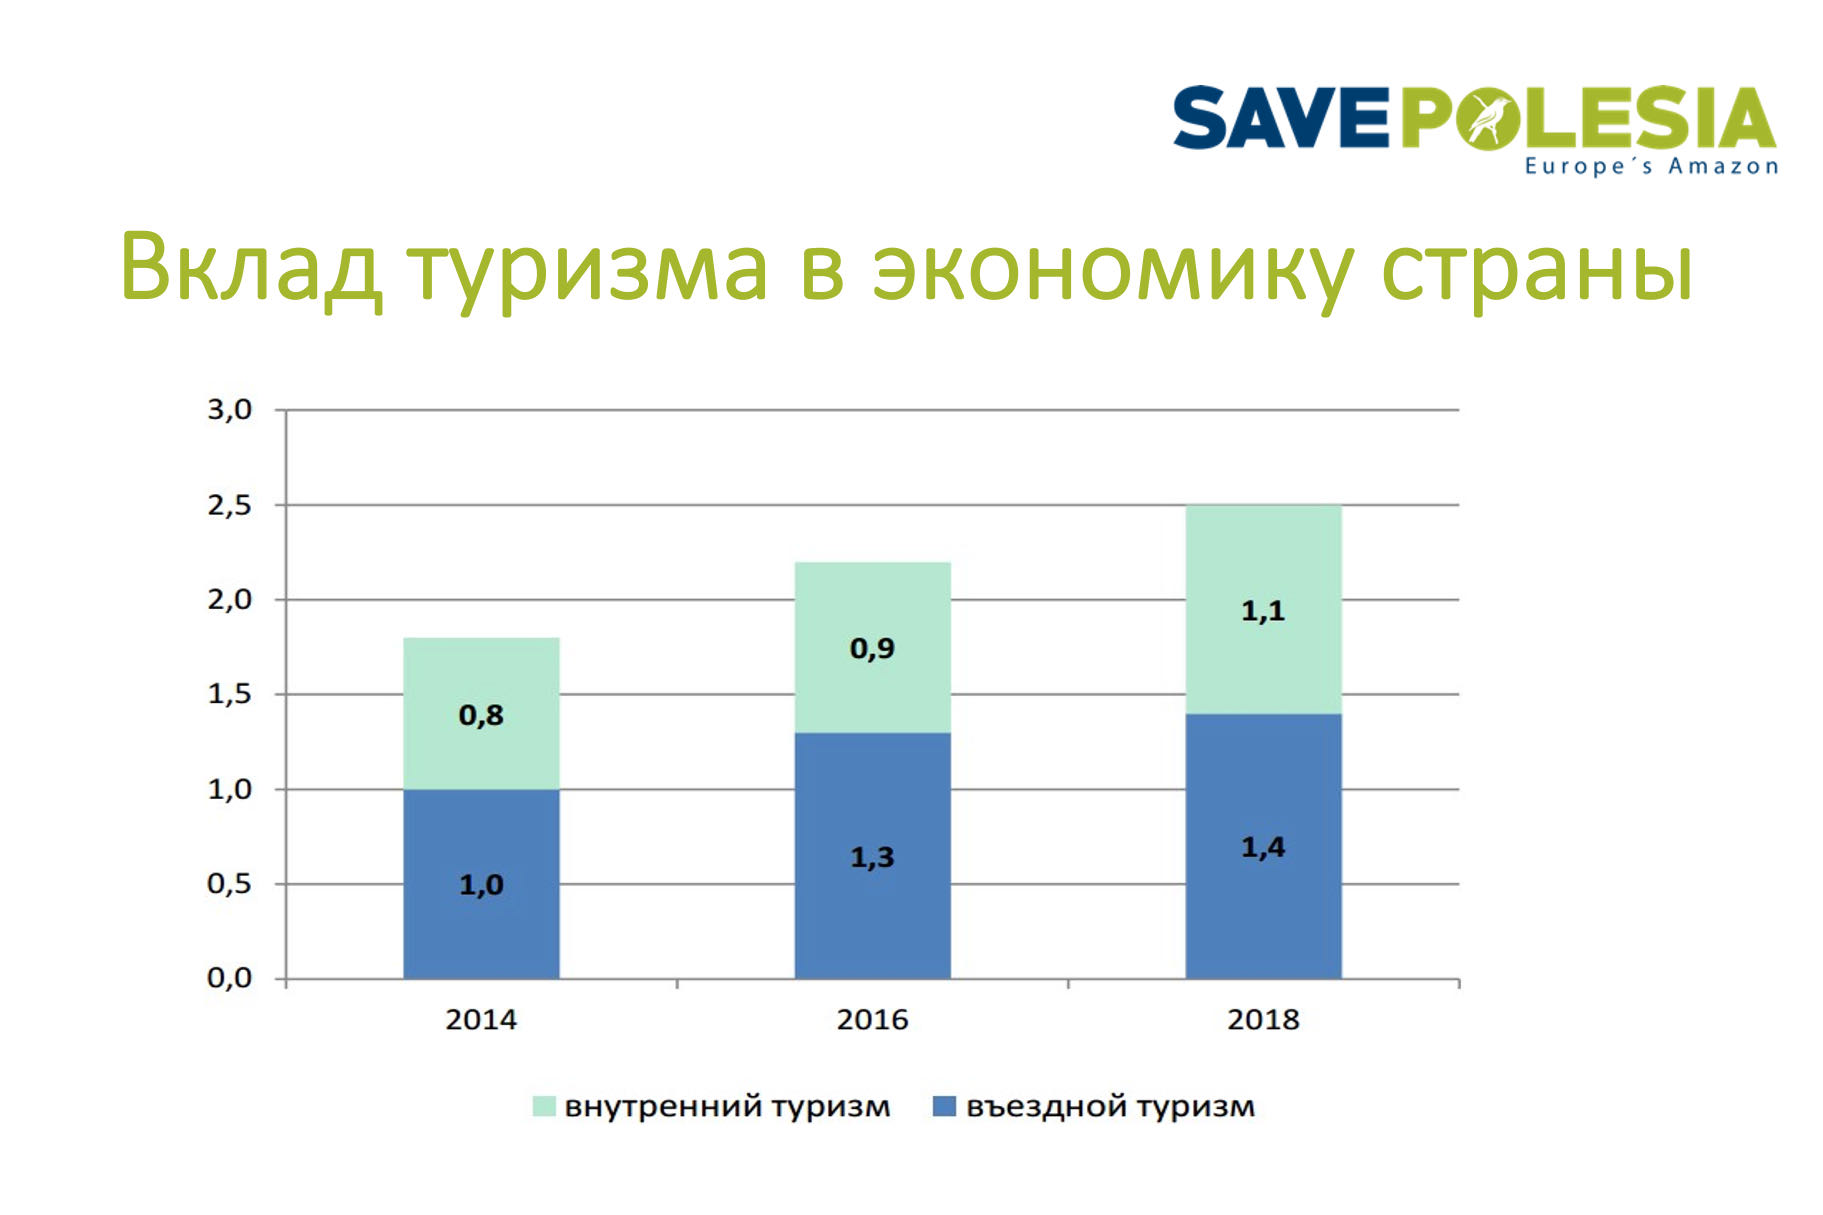 Туризм является одной из точек роста беларусской экономики, вклад туризма в ВВП (около 1,5 млрд долл.) сопоставим со вкладом IT-сектора (по состоянию на 2020 год). В туризме занято 255,6 тыс. человек, или 5,9% от занятых в экономике страны.